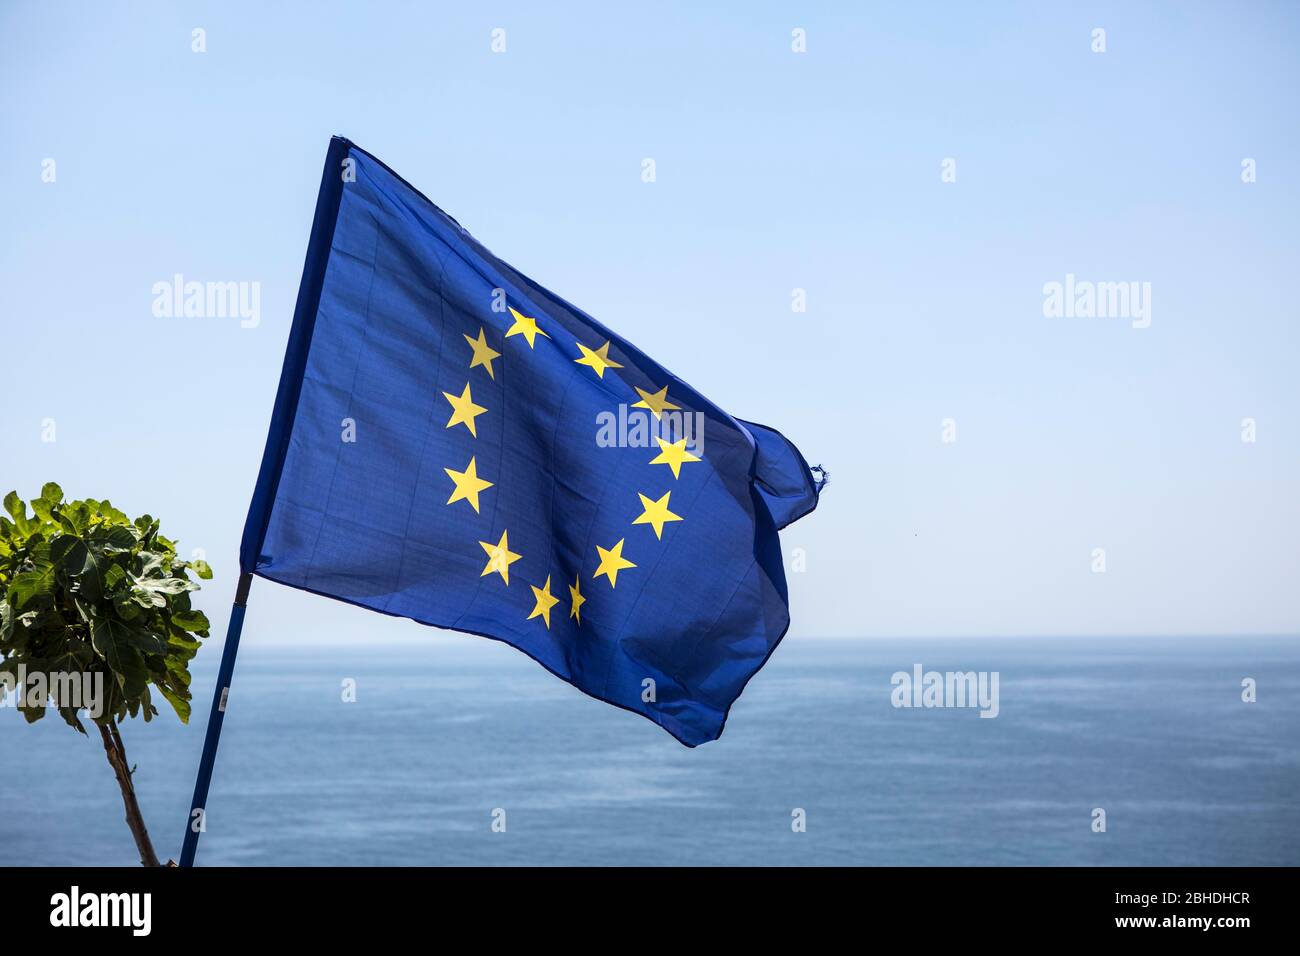 Die Flagge der europäischen Union weht am Cap bei Santa Maria di Leuca, dem Scheitelpunkt zwischen der Adria und dem ionischen Meer in Süditalien. Foto de stock